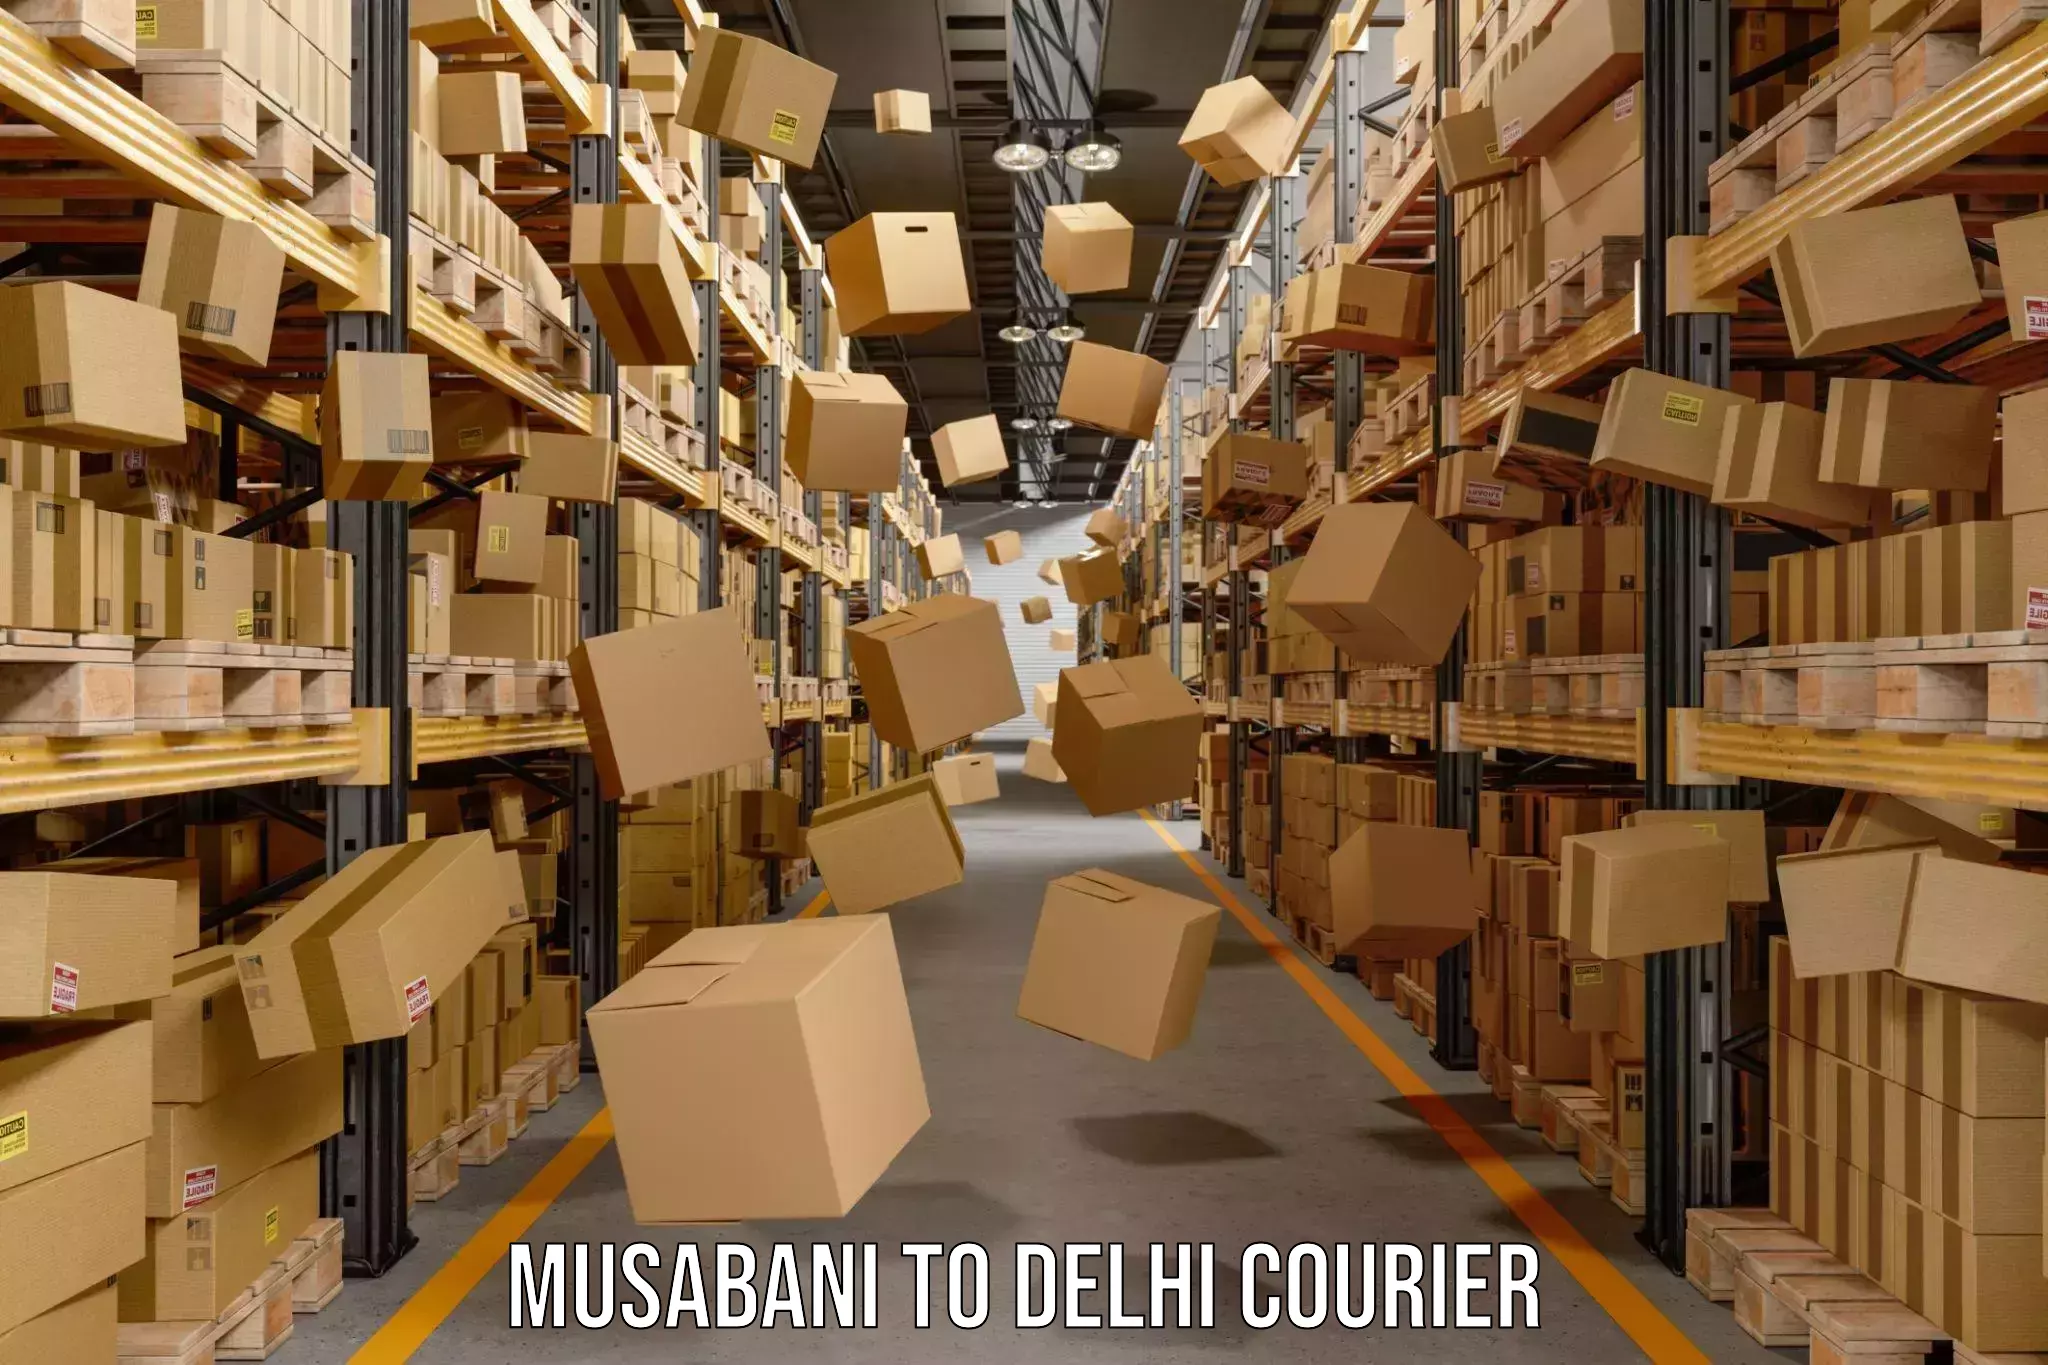 Express logistics providers Musabani to Delhi